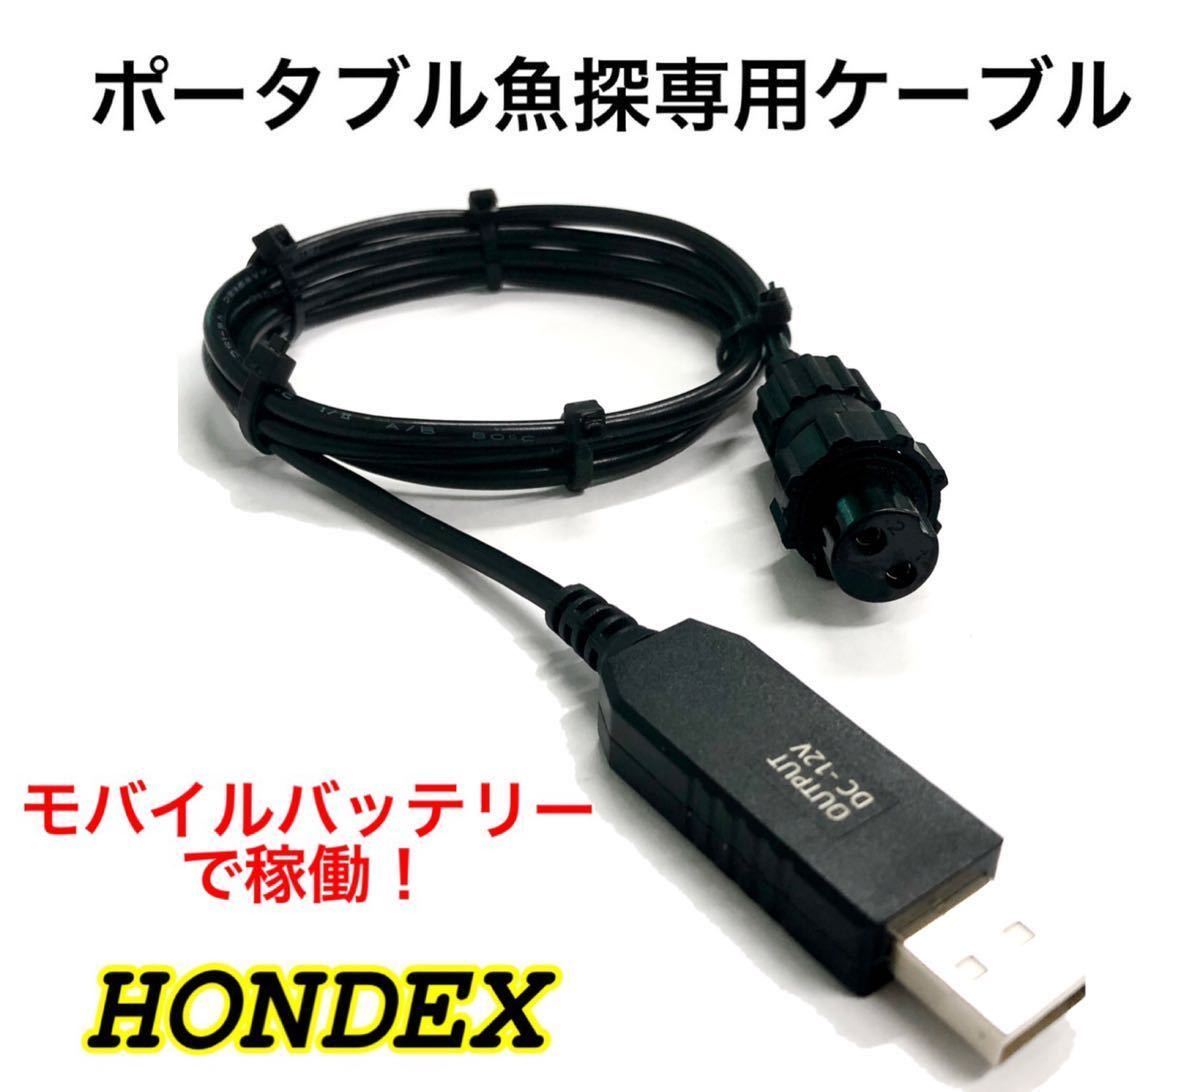 大好き 電池不要 モバイルバッテリーでホンデックス HONDEX 魚探を動かすケーブル